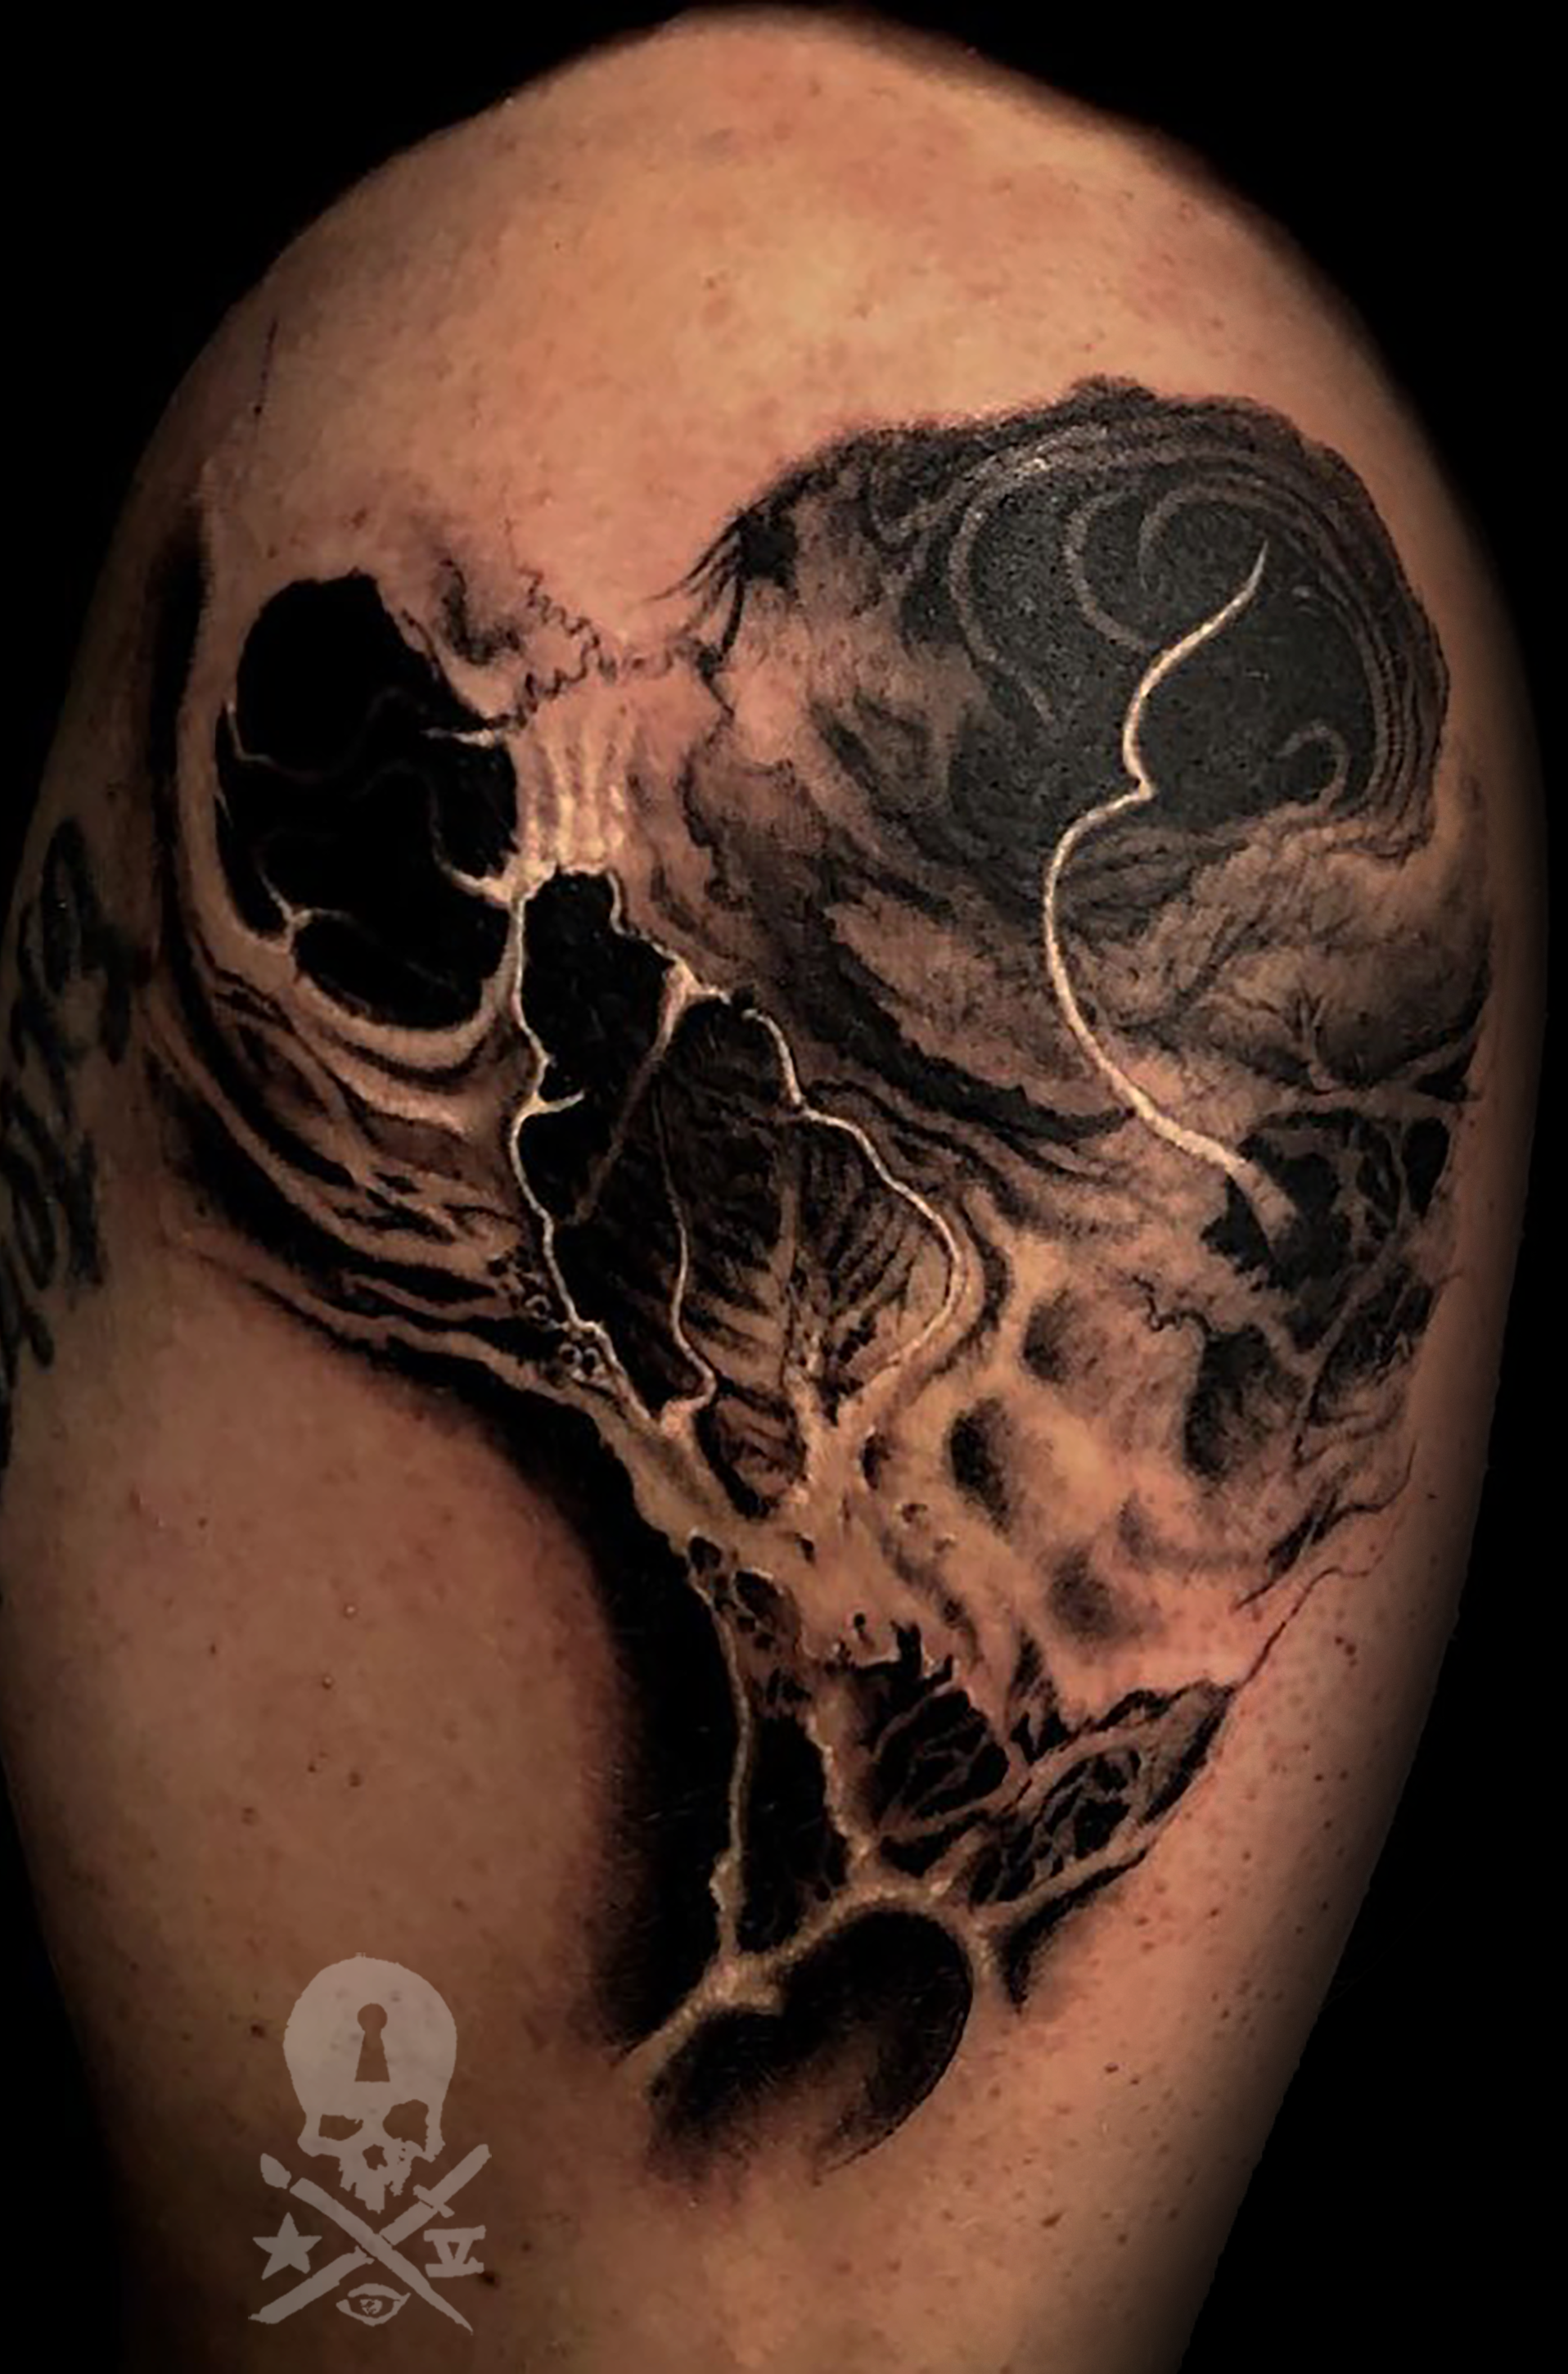 Tattoos - Skull - 137369